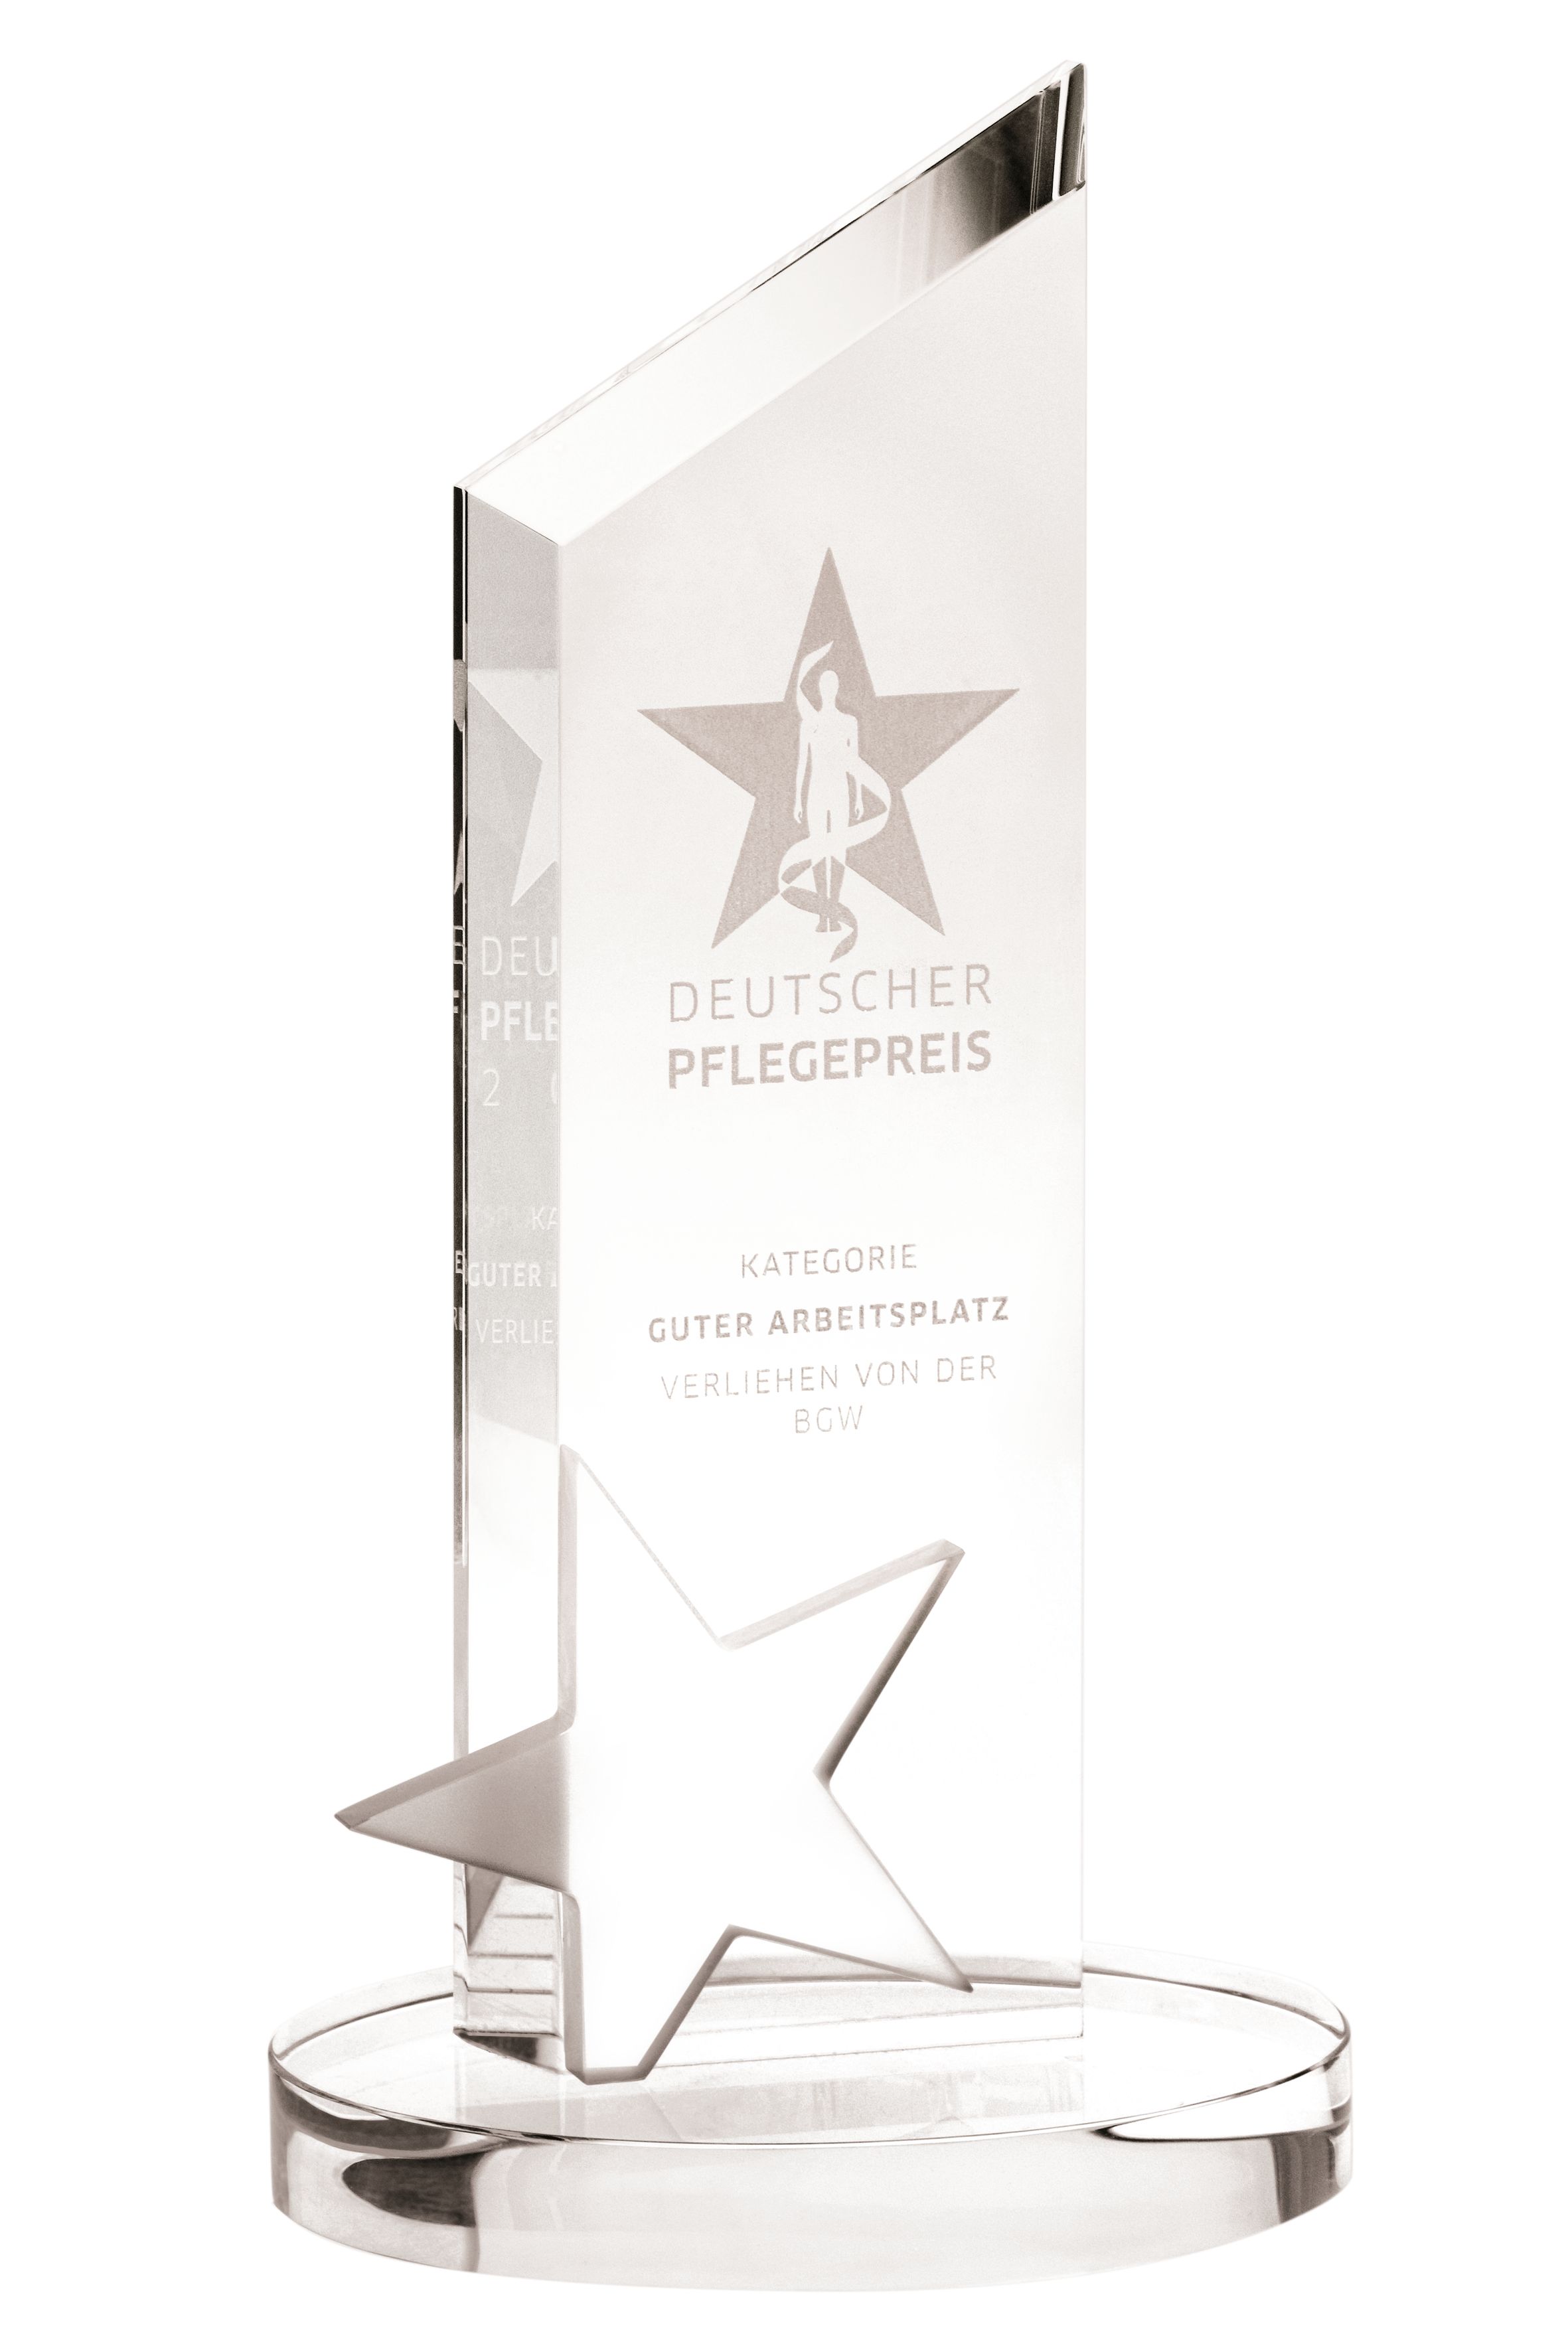 Abbildung des Pokals Deutscher Pflegepreis - Kategorie Guter Arbeitsplatz verliehen von der BGW